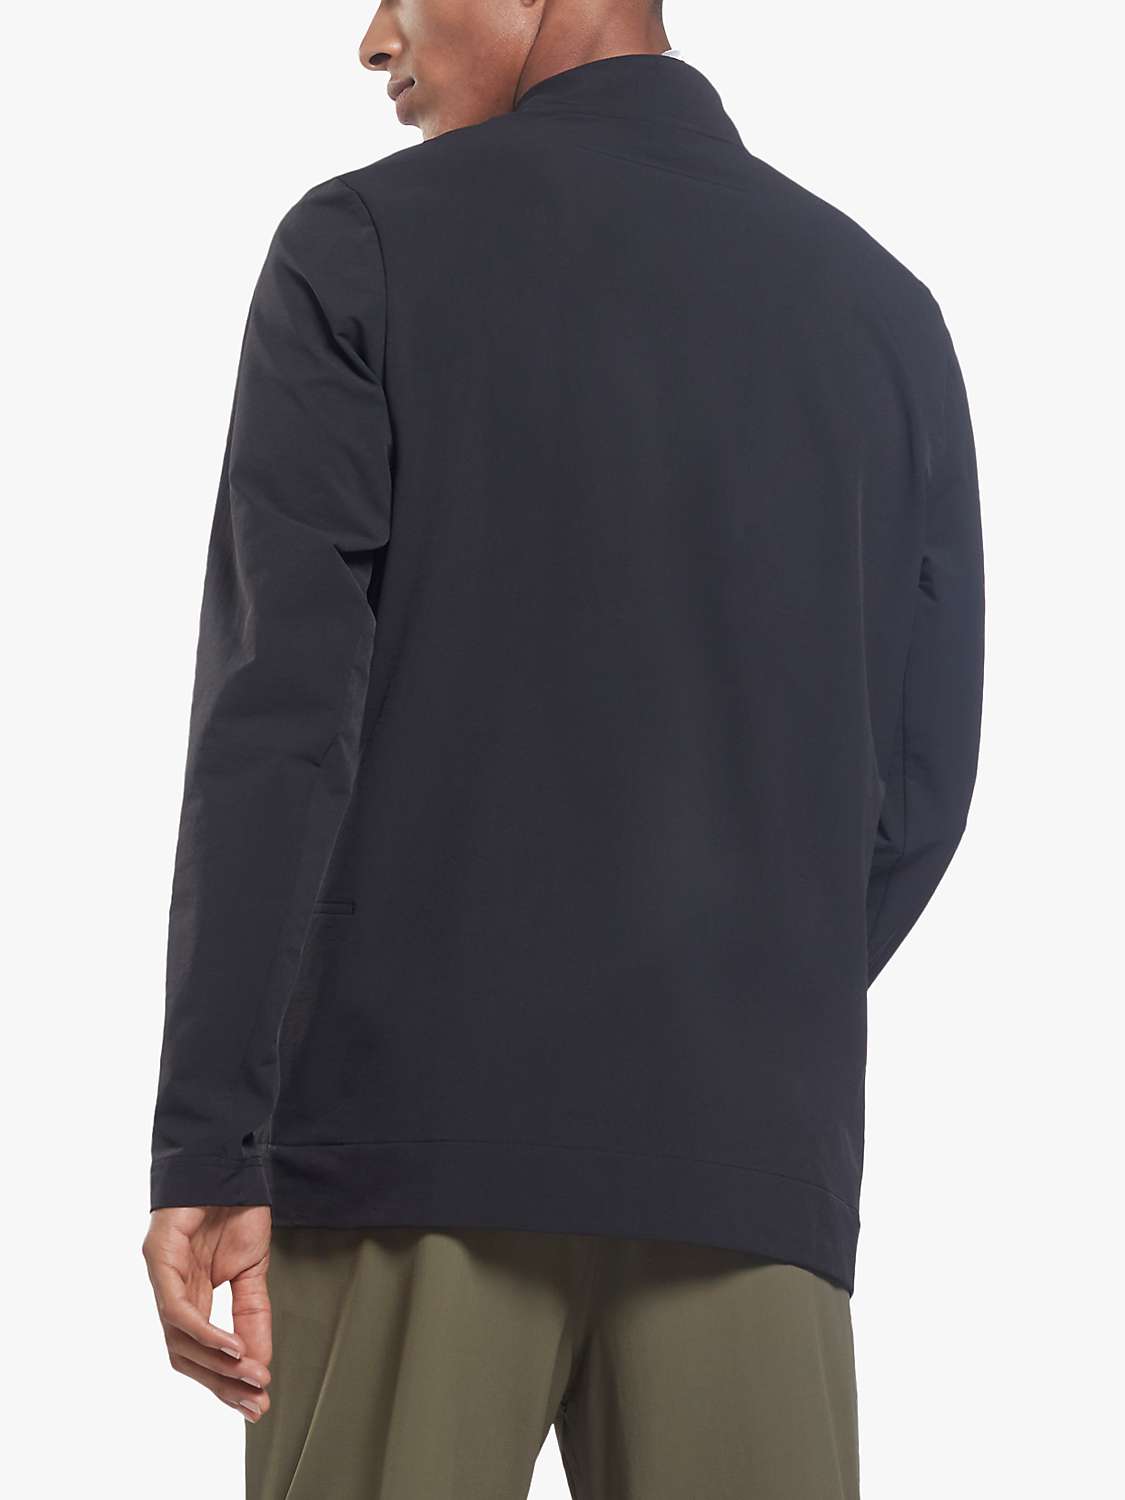 Buy Reebok Performance Woven Quarter Zip Sweatshirt Online at johnlewis.com